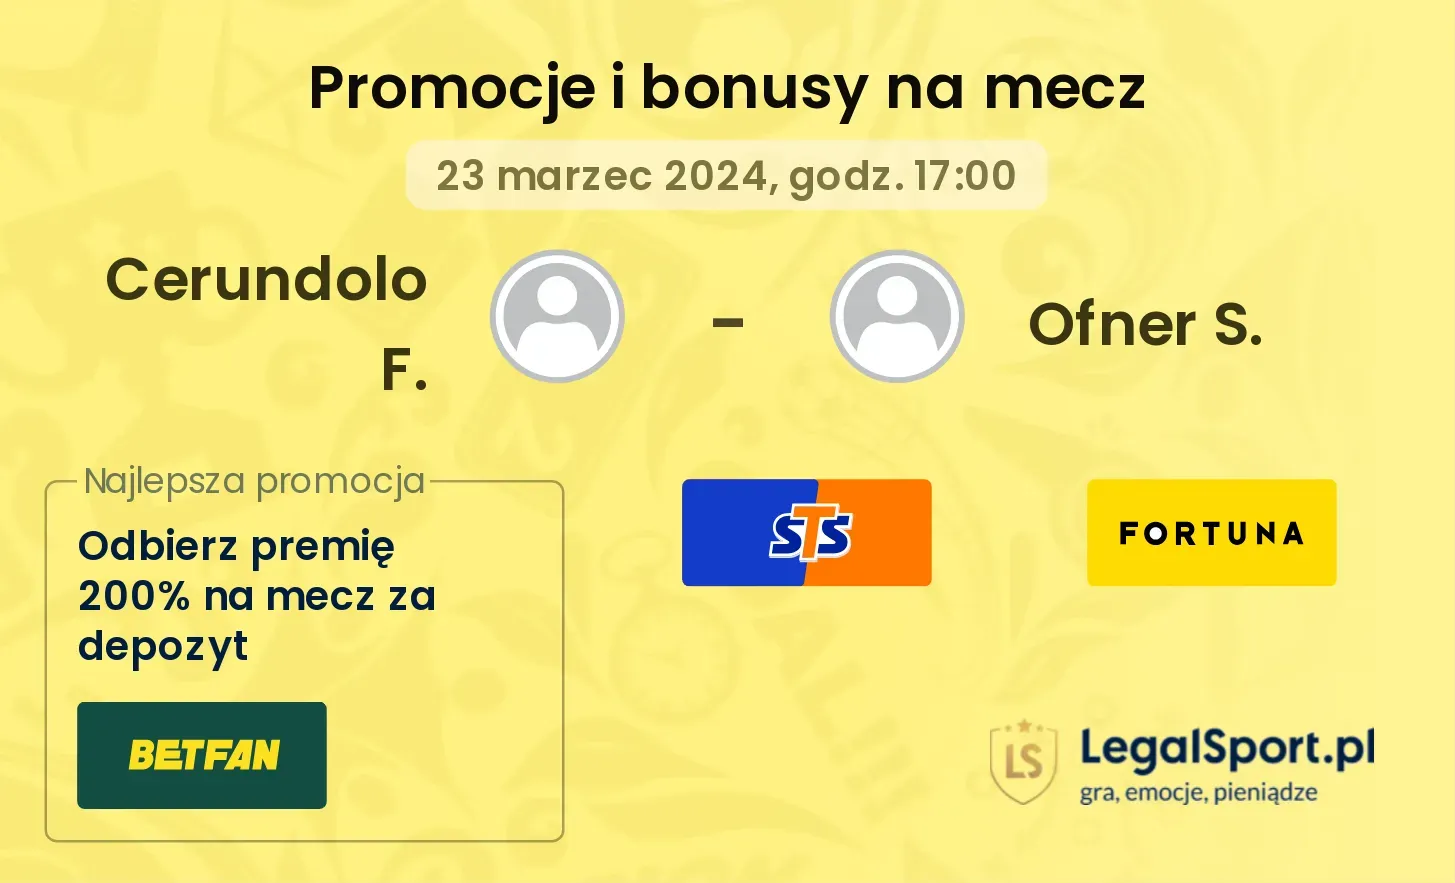 Cerundolo F. - Ofner S. promocje bonusy na mecz